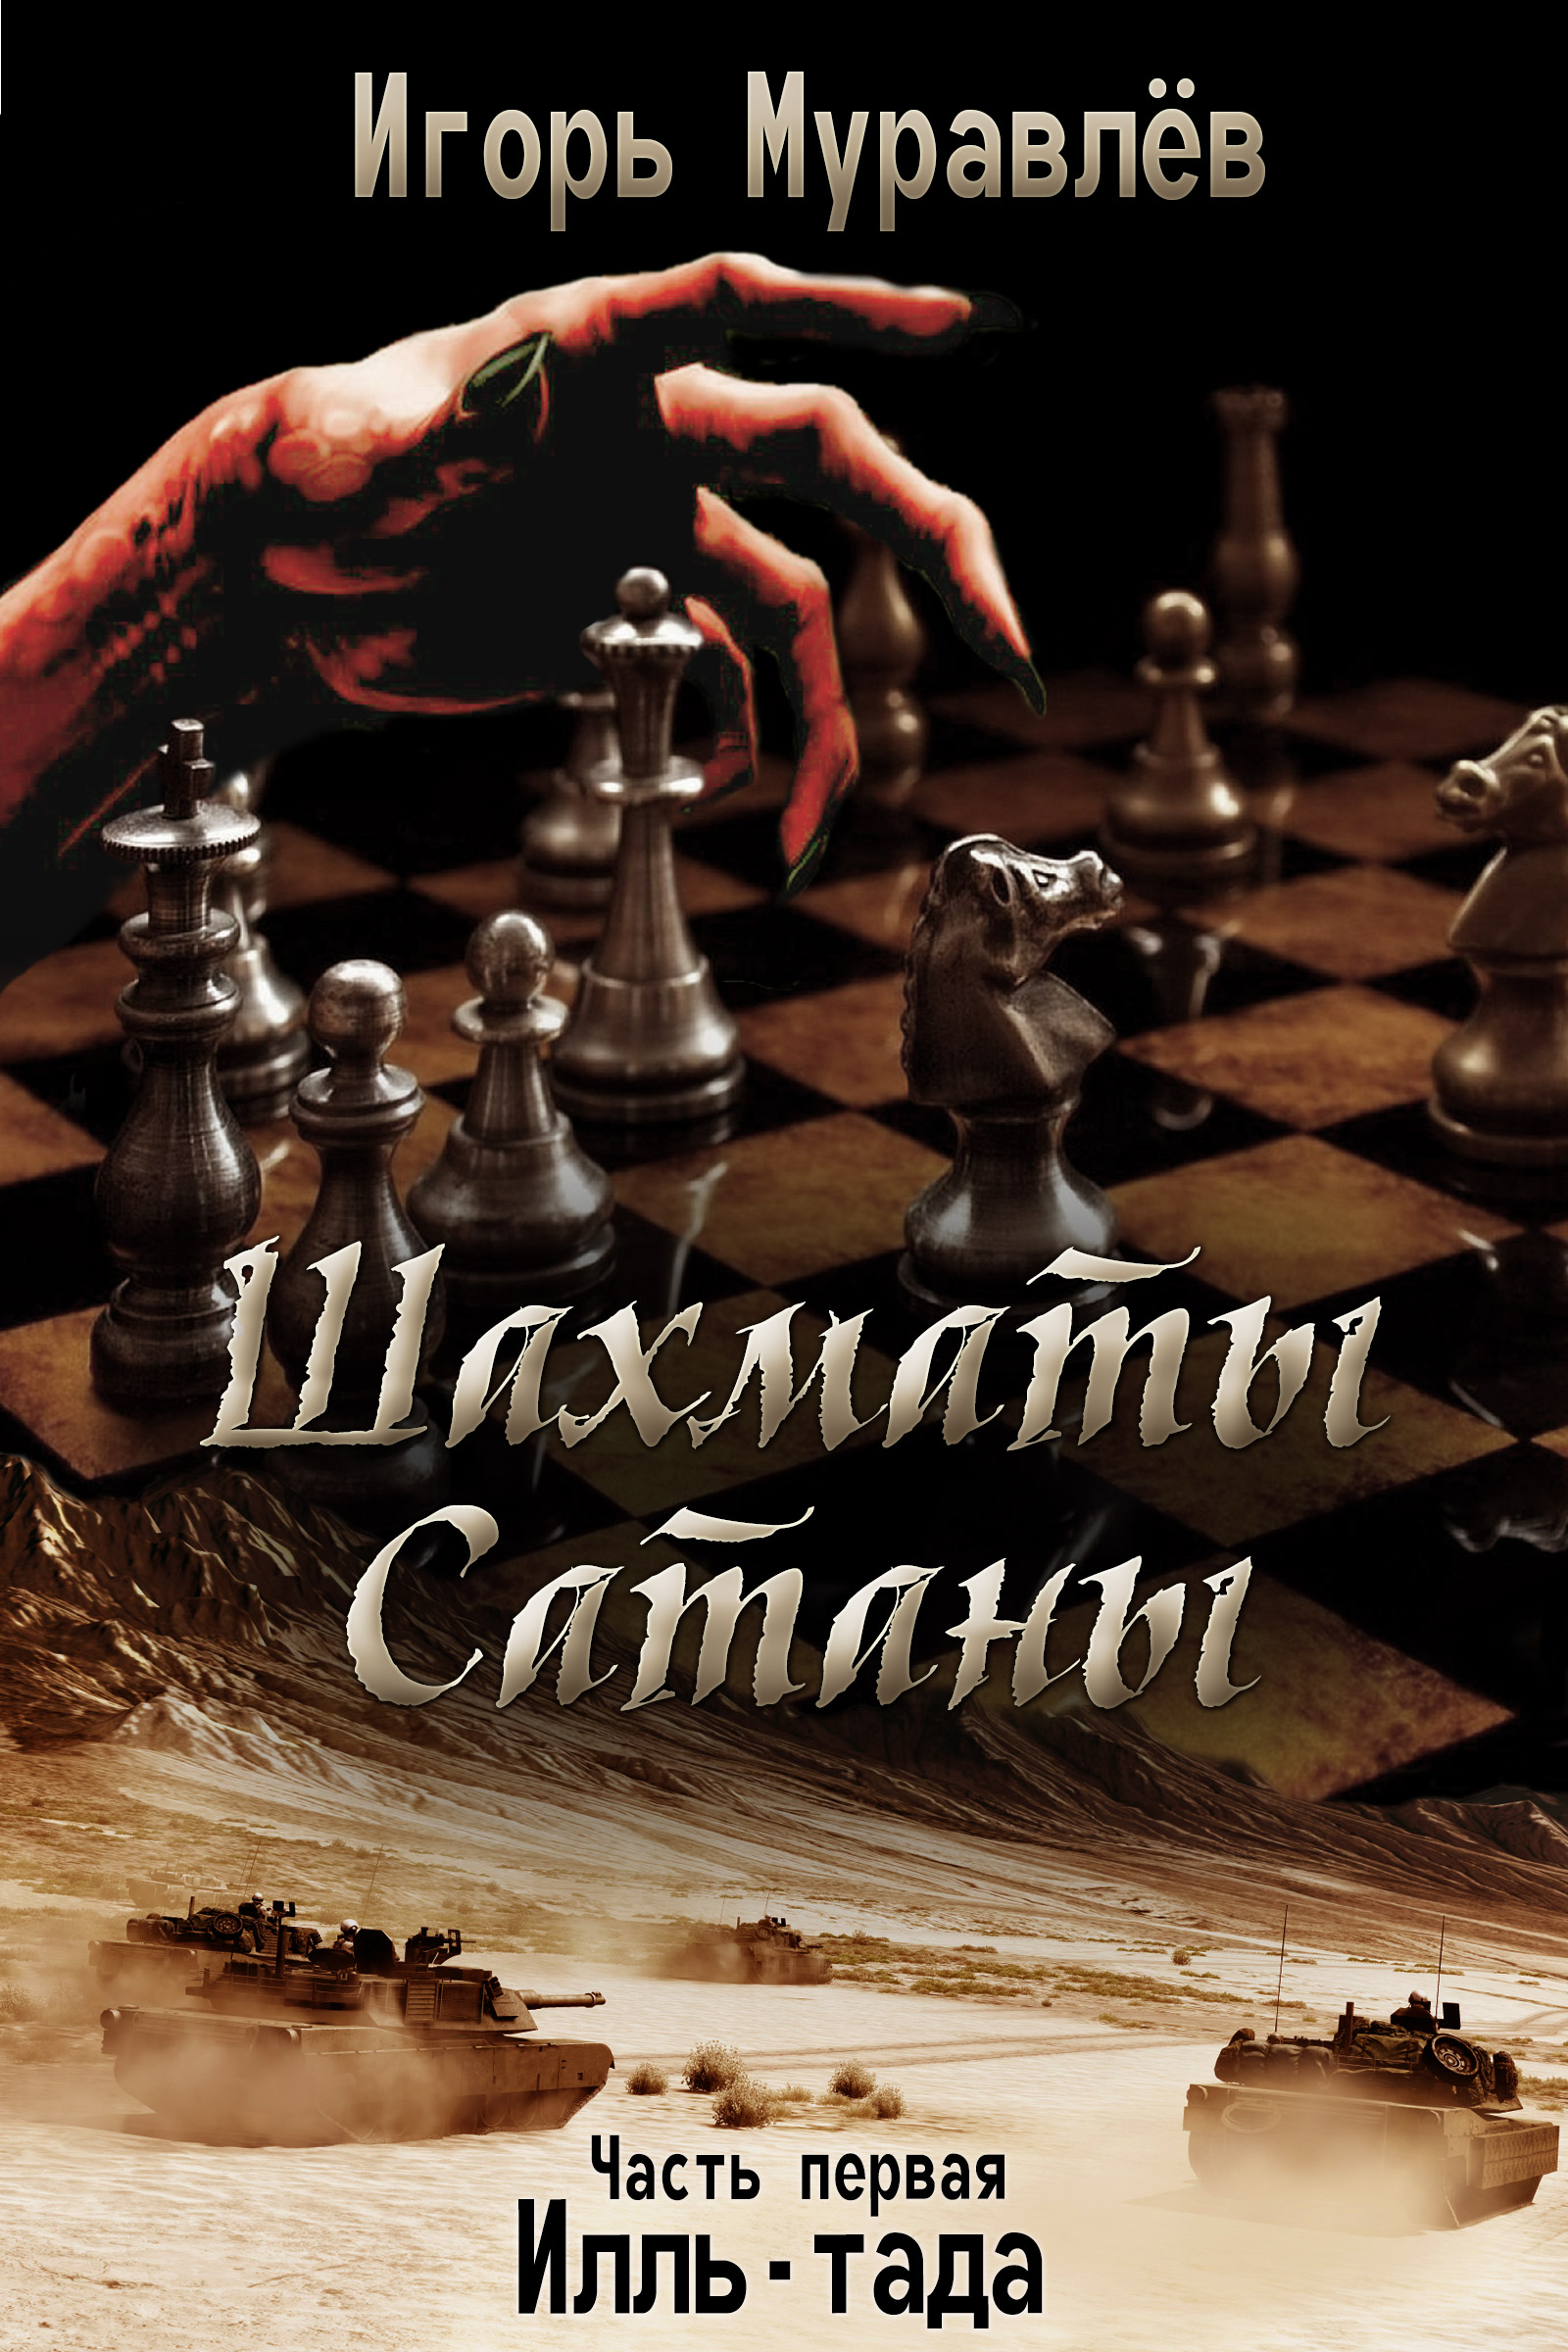 Шахматы Сатаны | Игорь Муравлев